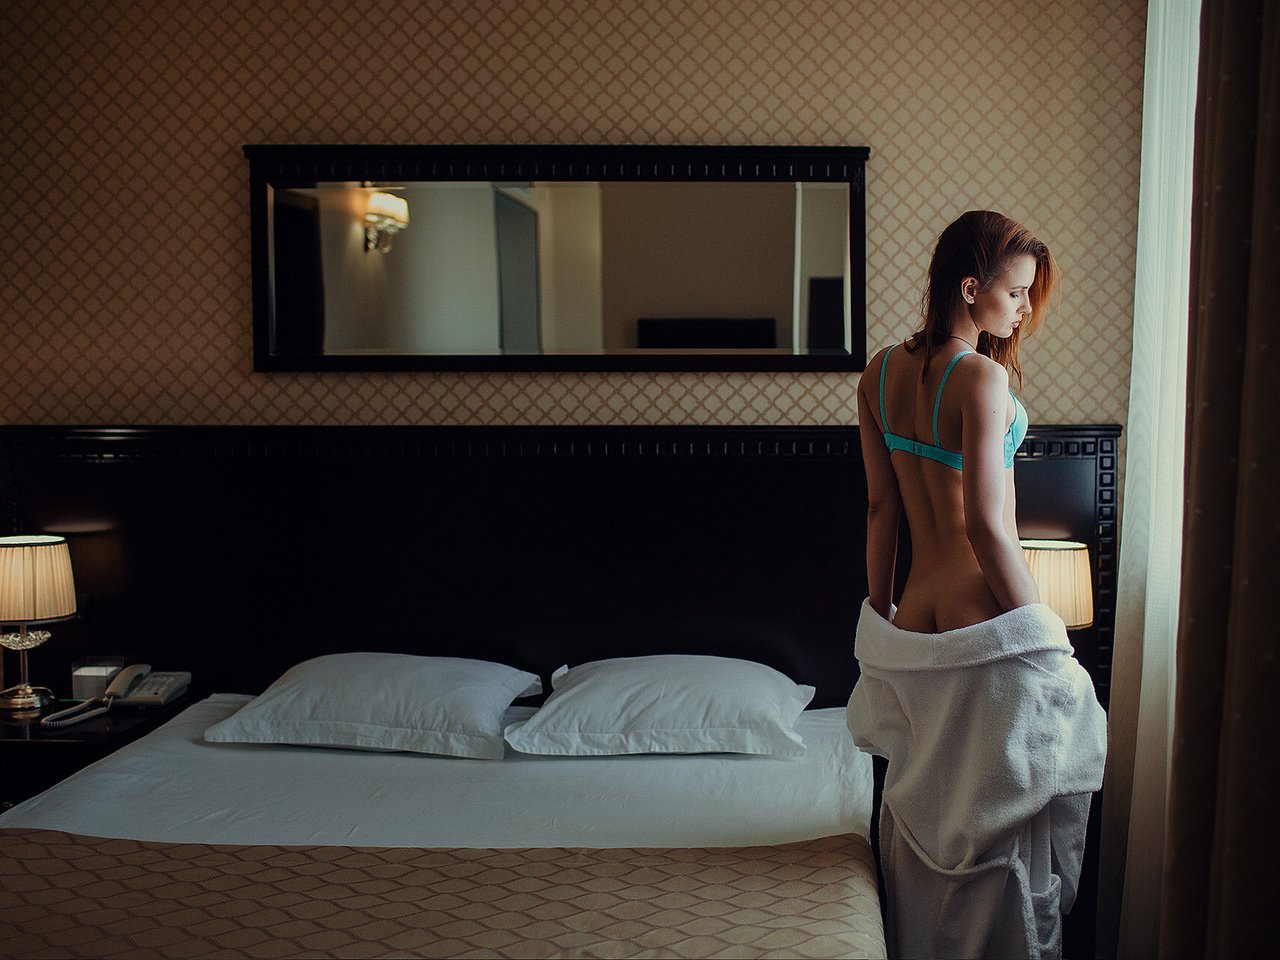 Фото нежного тела похотливой девушки в квартирном интерьере